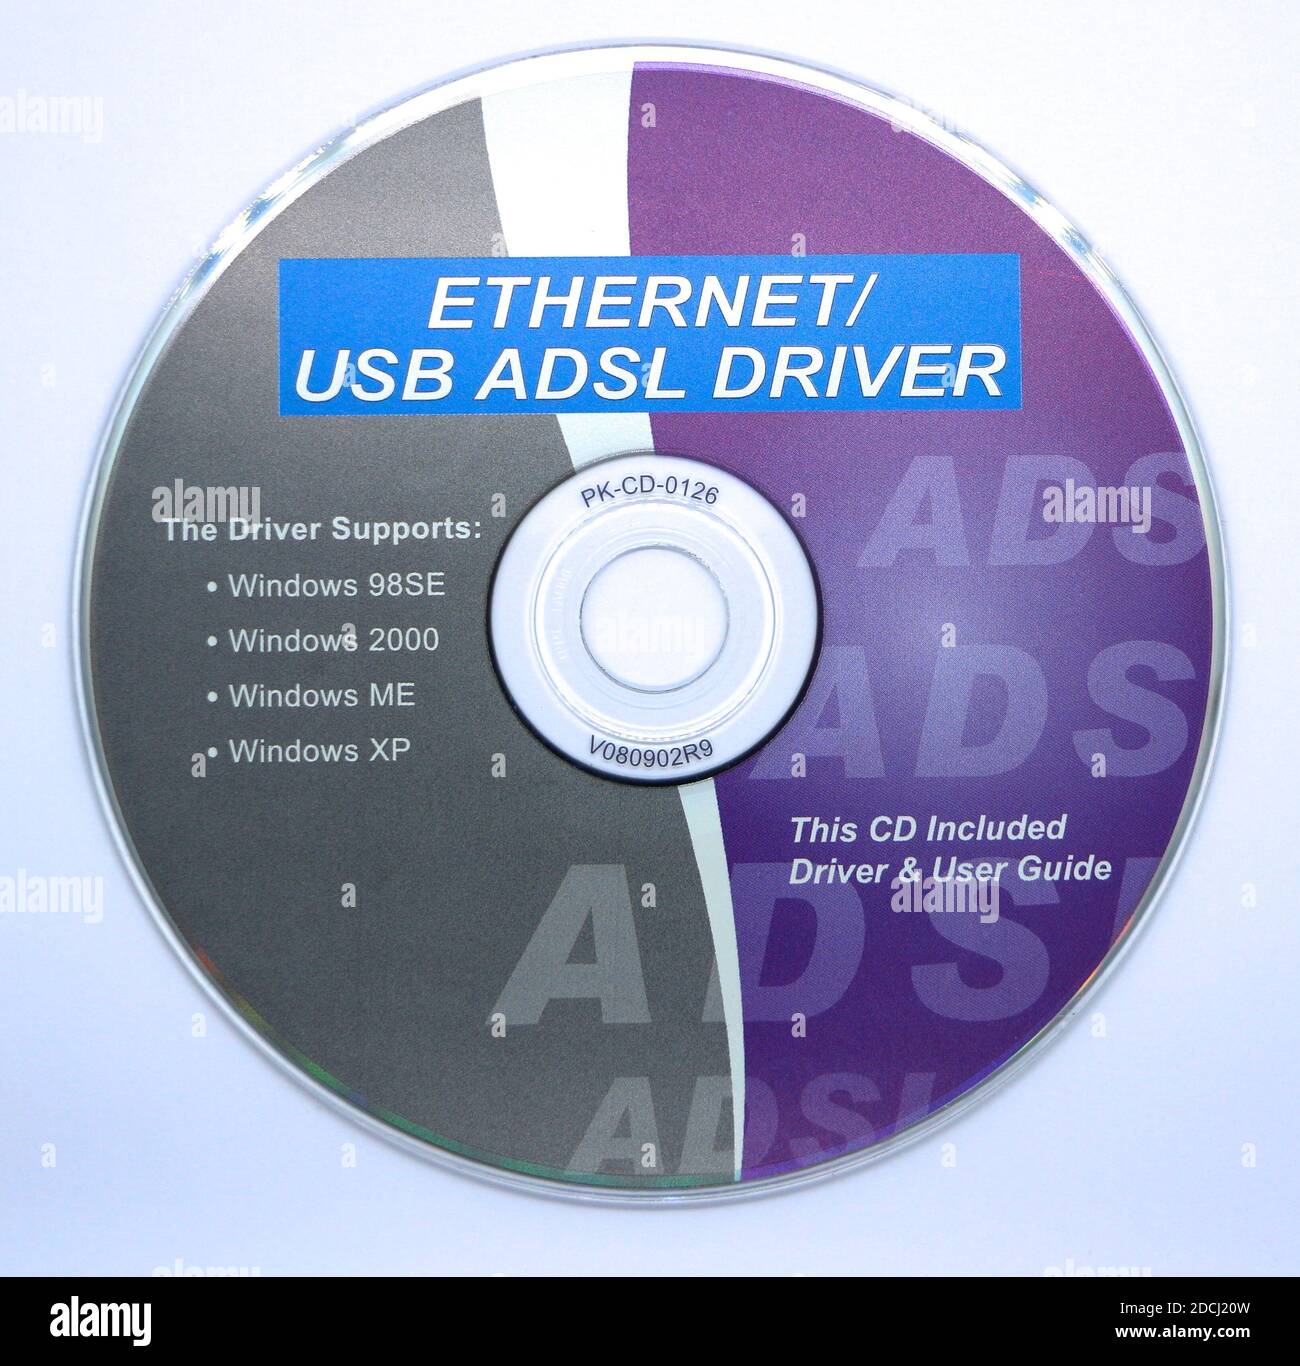 Foto de un controlador Ethernet/USB ADSL y guía del usuario en un cd para  Windows XP y versiones anteriores sobre un fondo blanco Fotografía de stock  - Alamy